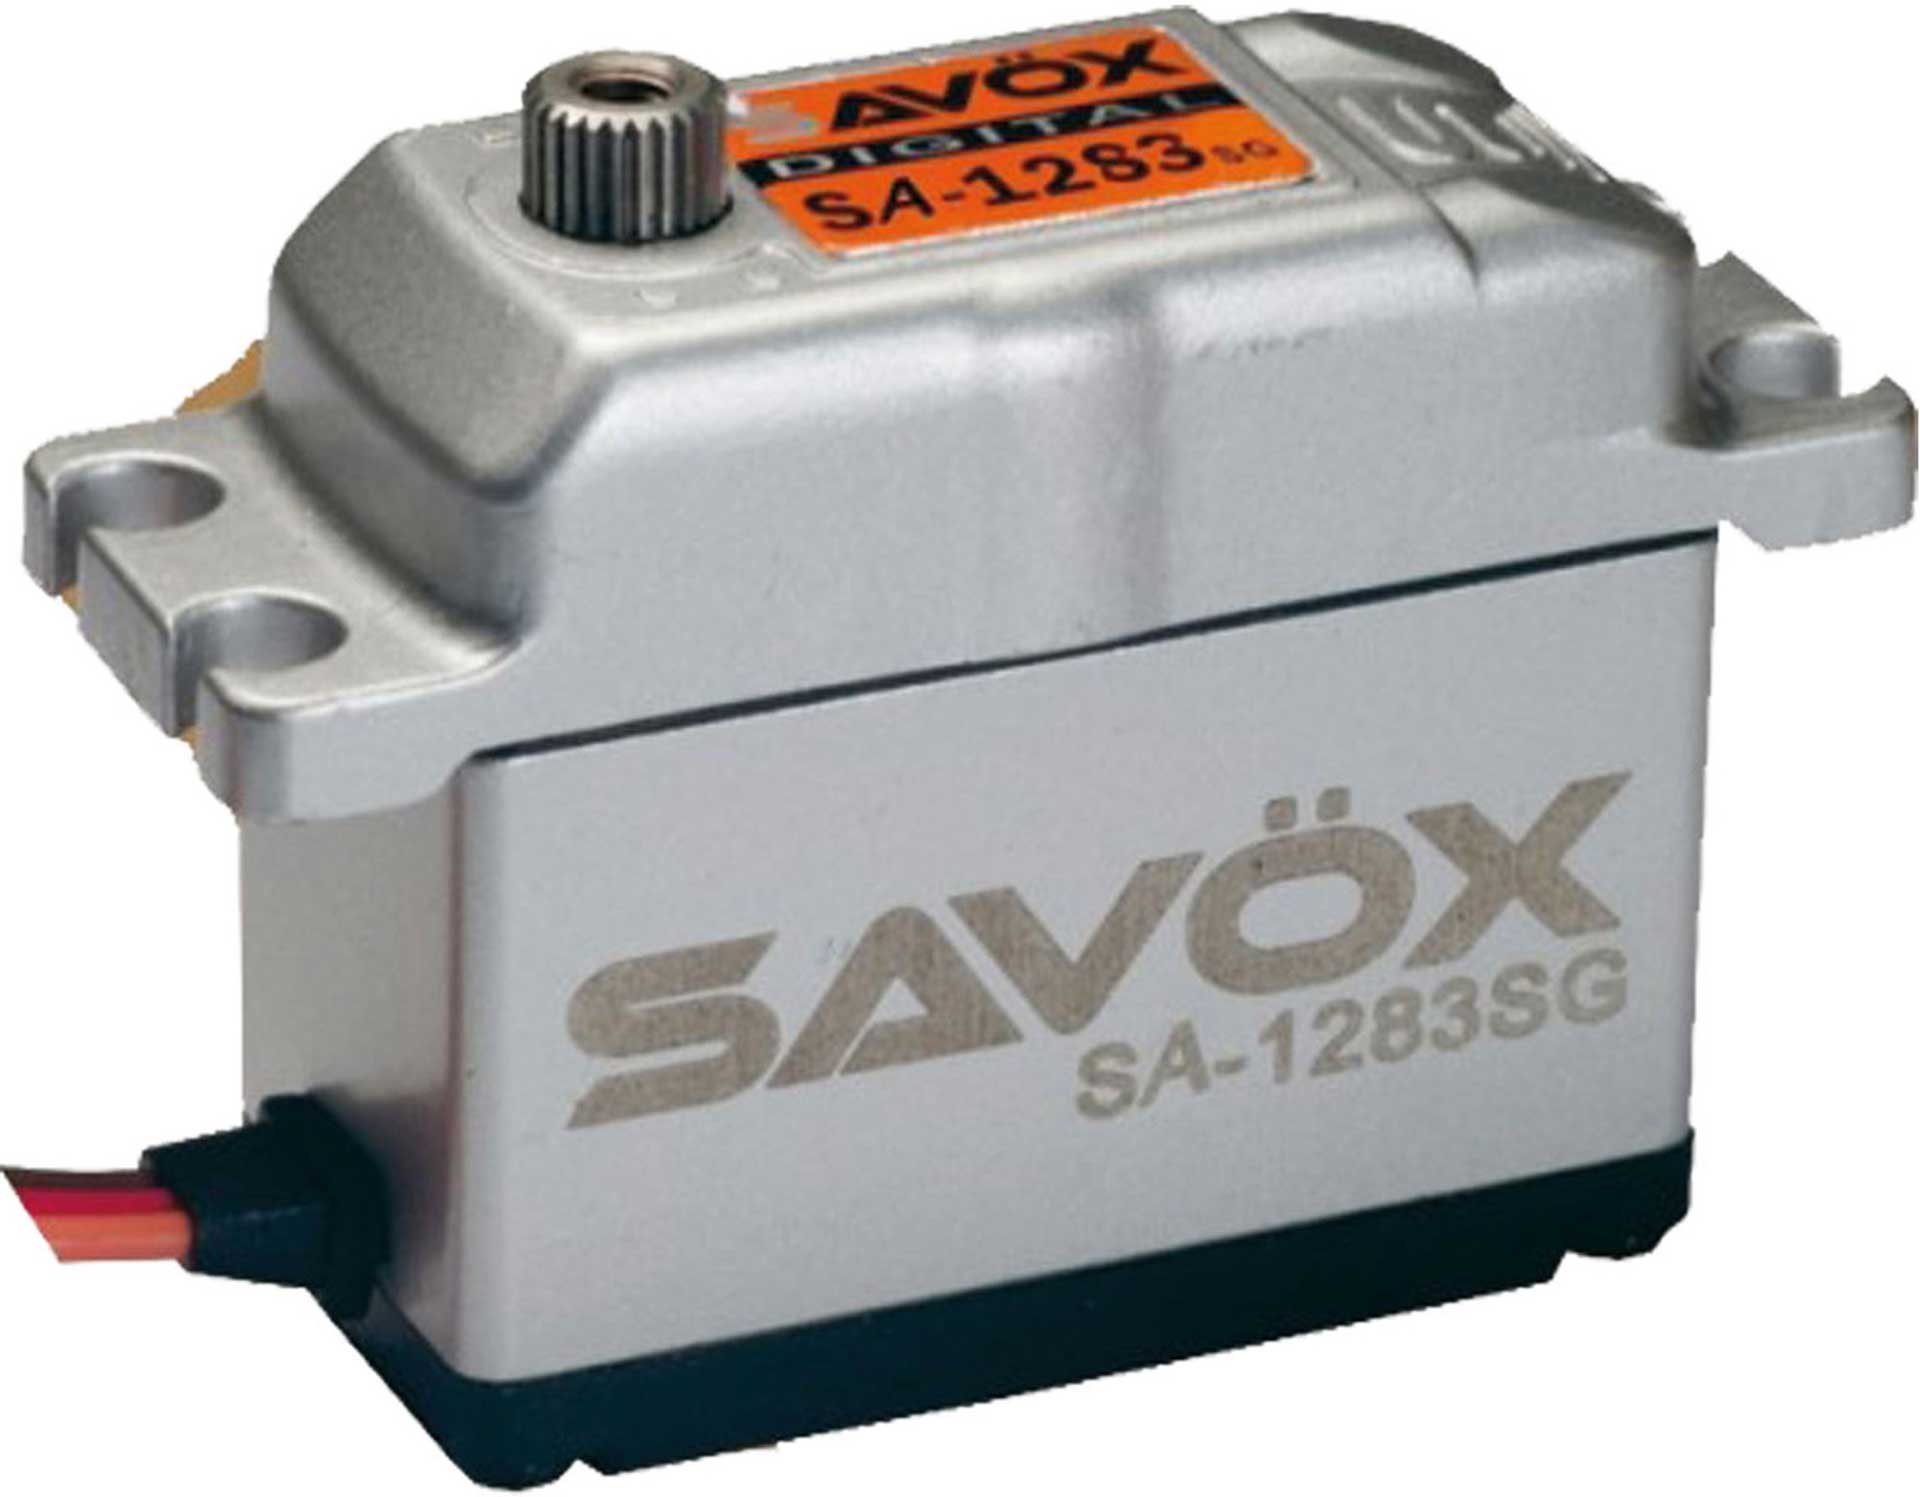 SAVÖX SA-1283SG (6V/30KG/0,13s) CORELESS DIGITAL SERVO